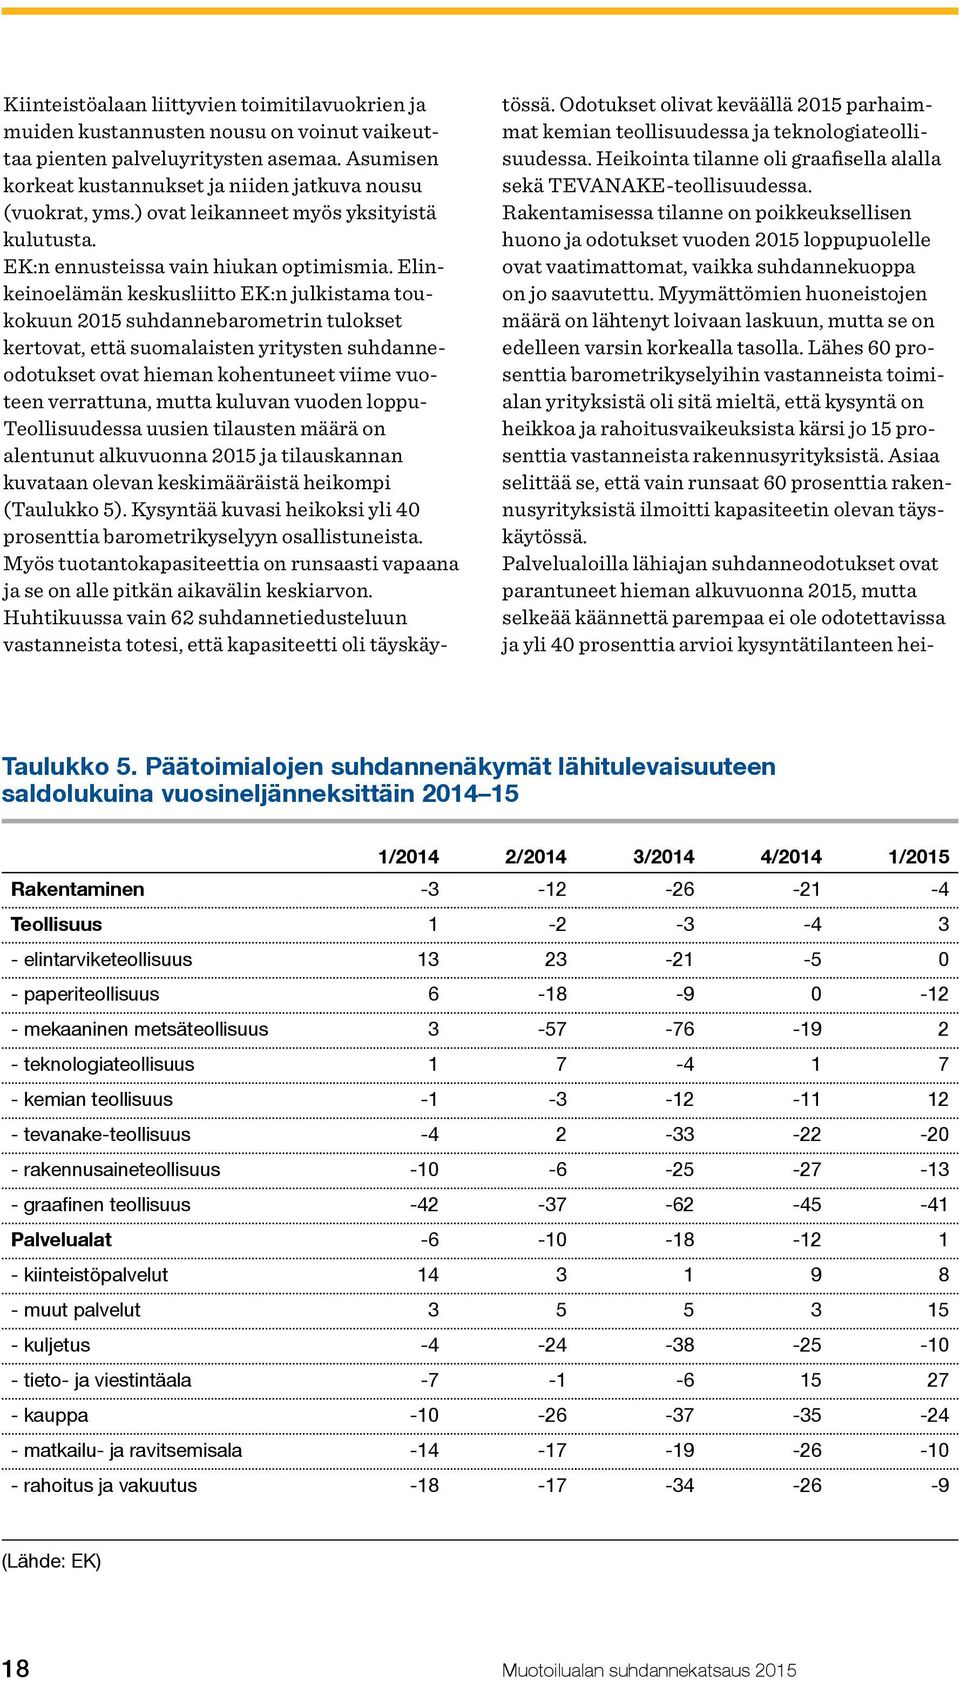 Elinkeinoelämän keskusliitto EK:n julkistama toukokuun 2015 suhdannebarometrin tulokset kertovat, että suomalaisten yritysten suhdanneodotukset ovat hieman kohentuneet viime vuoteen verrattuna, mutta